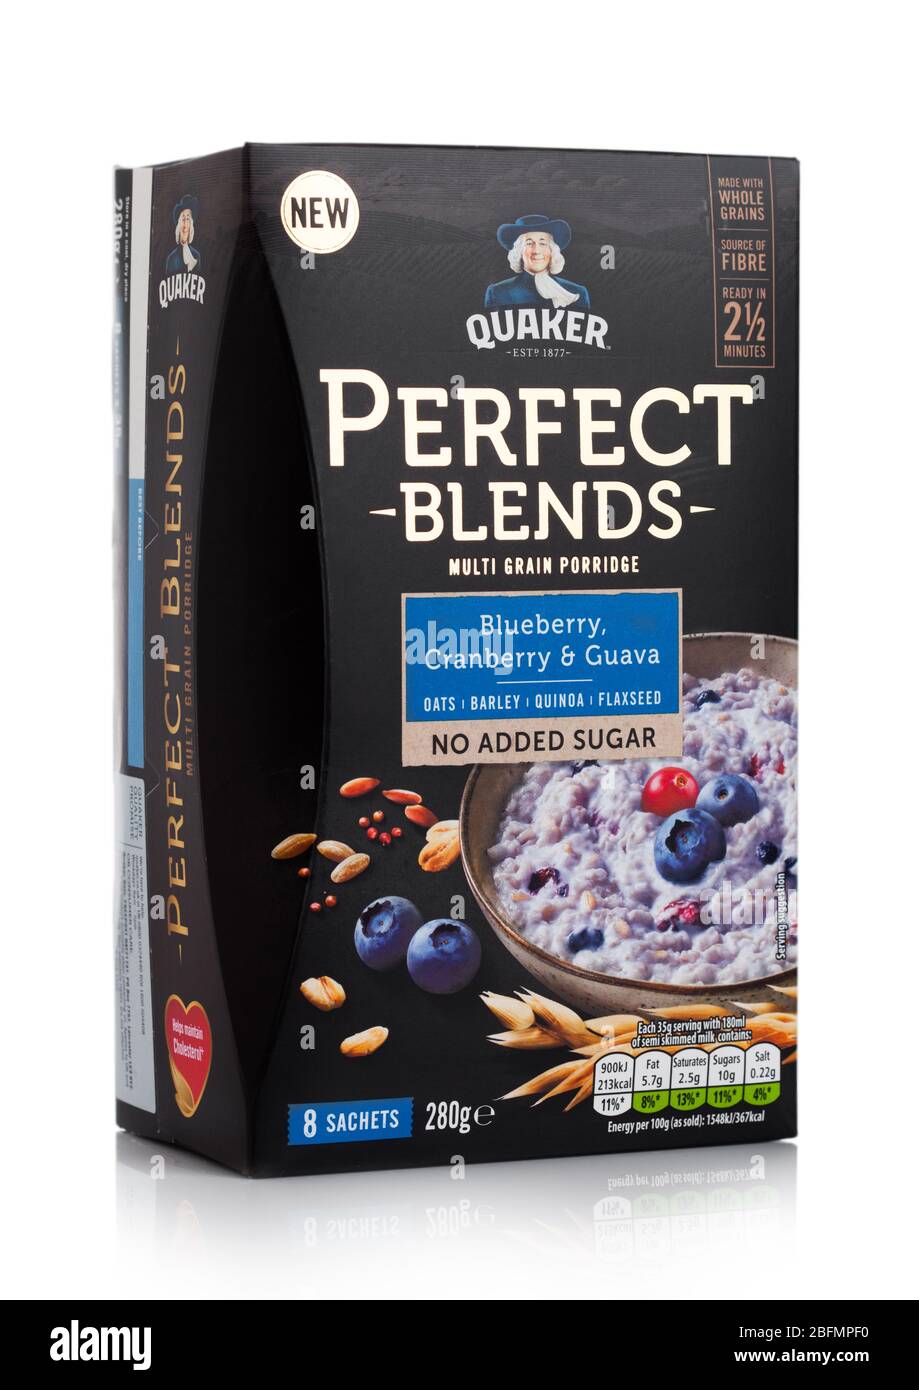 LONDON, UK - APRIL 01, 2020: Box of Quaker Perfect blends multi grain  porridge on white background Stock Photo - Alamy